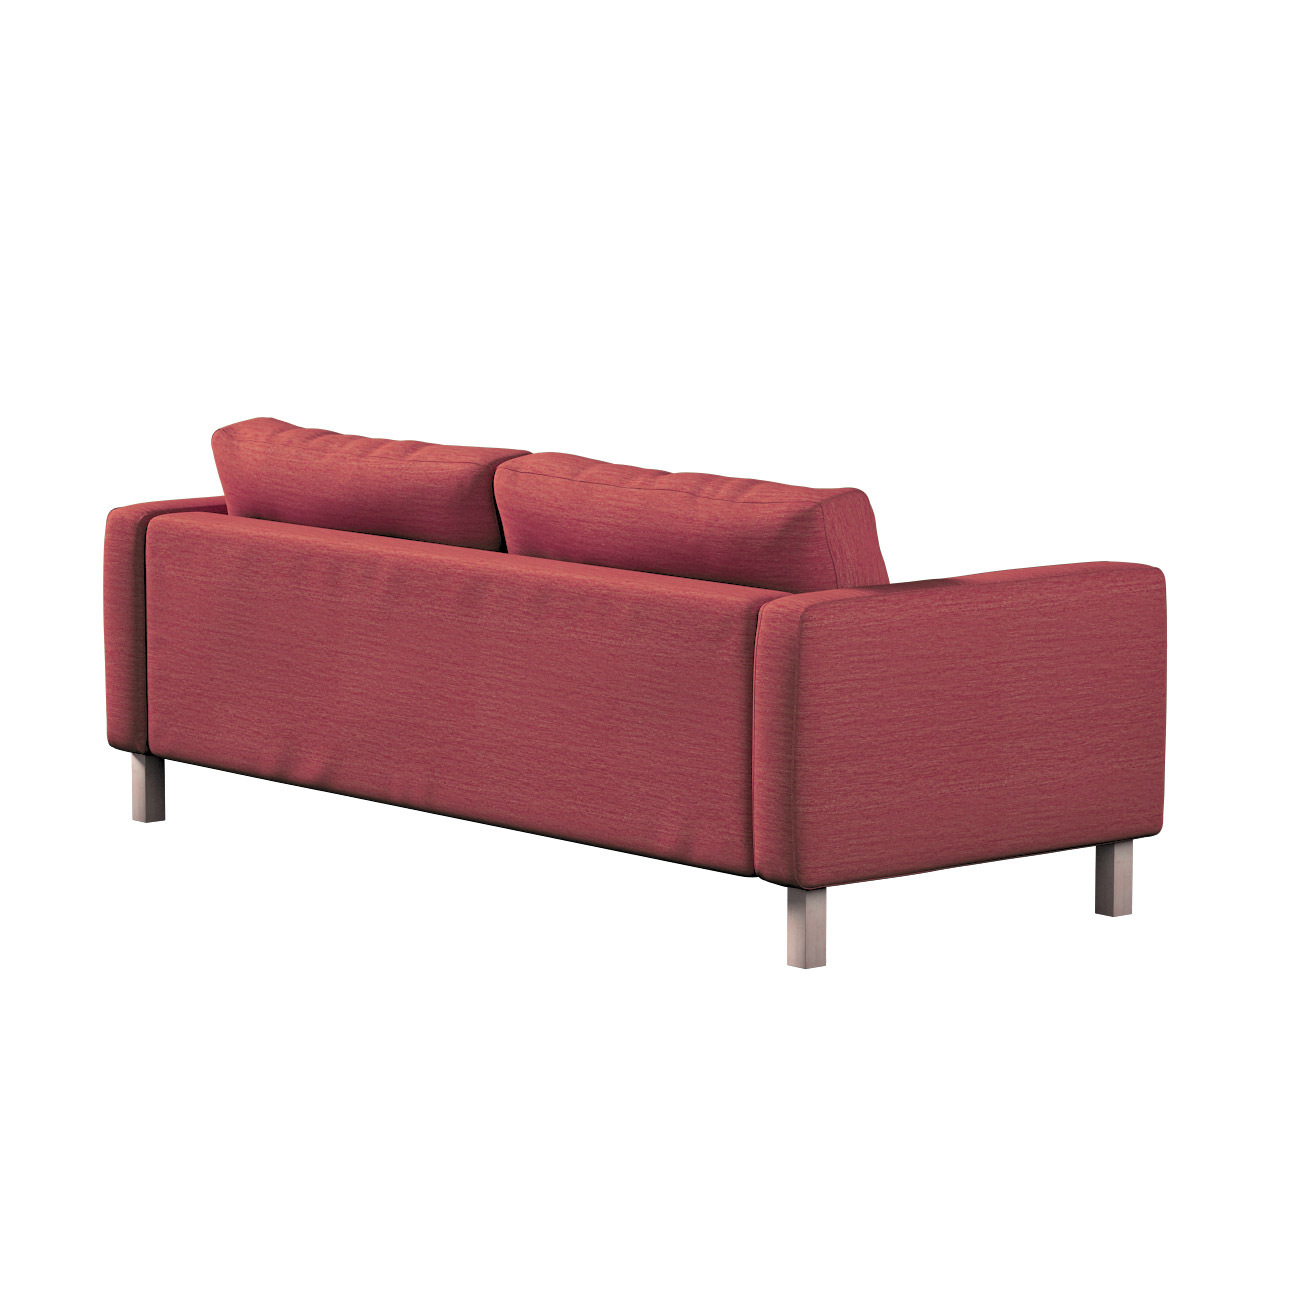 Bezug für Karlstad 3-Sitzer Sofa nicht ausklappbar, kurz, ziegelrot, Bezug günstig online kaufen